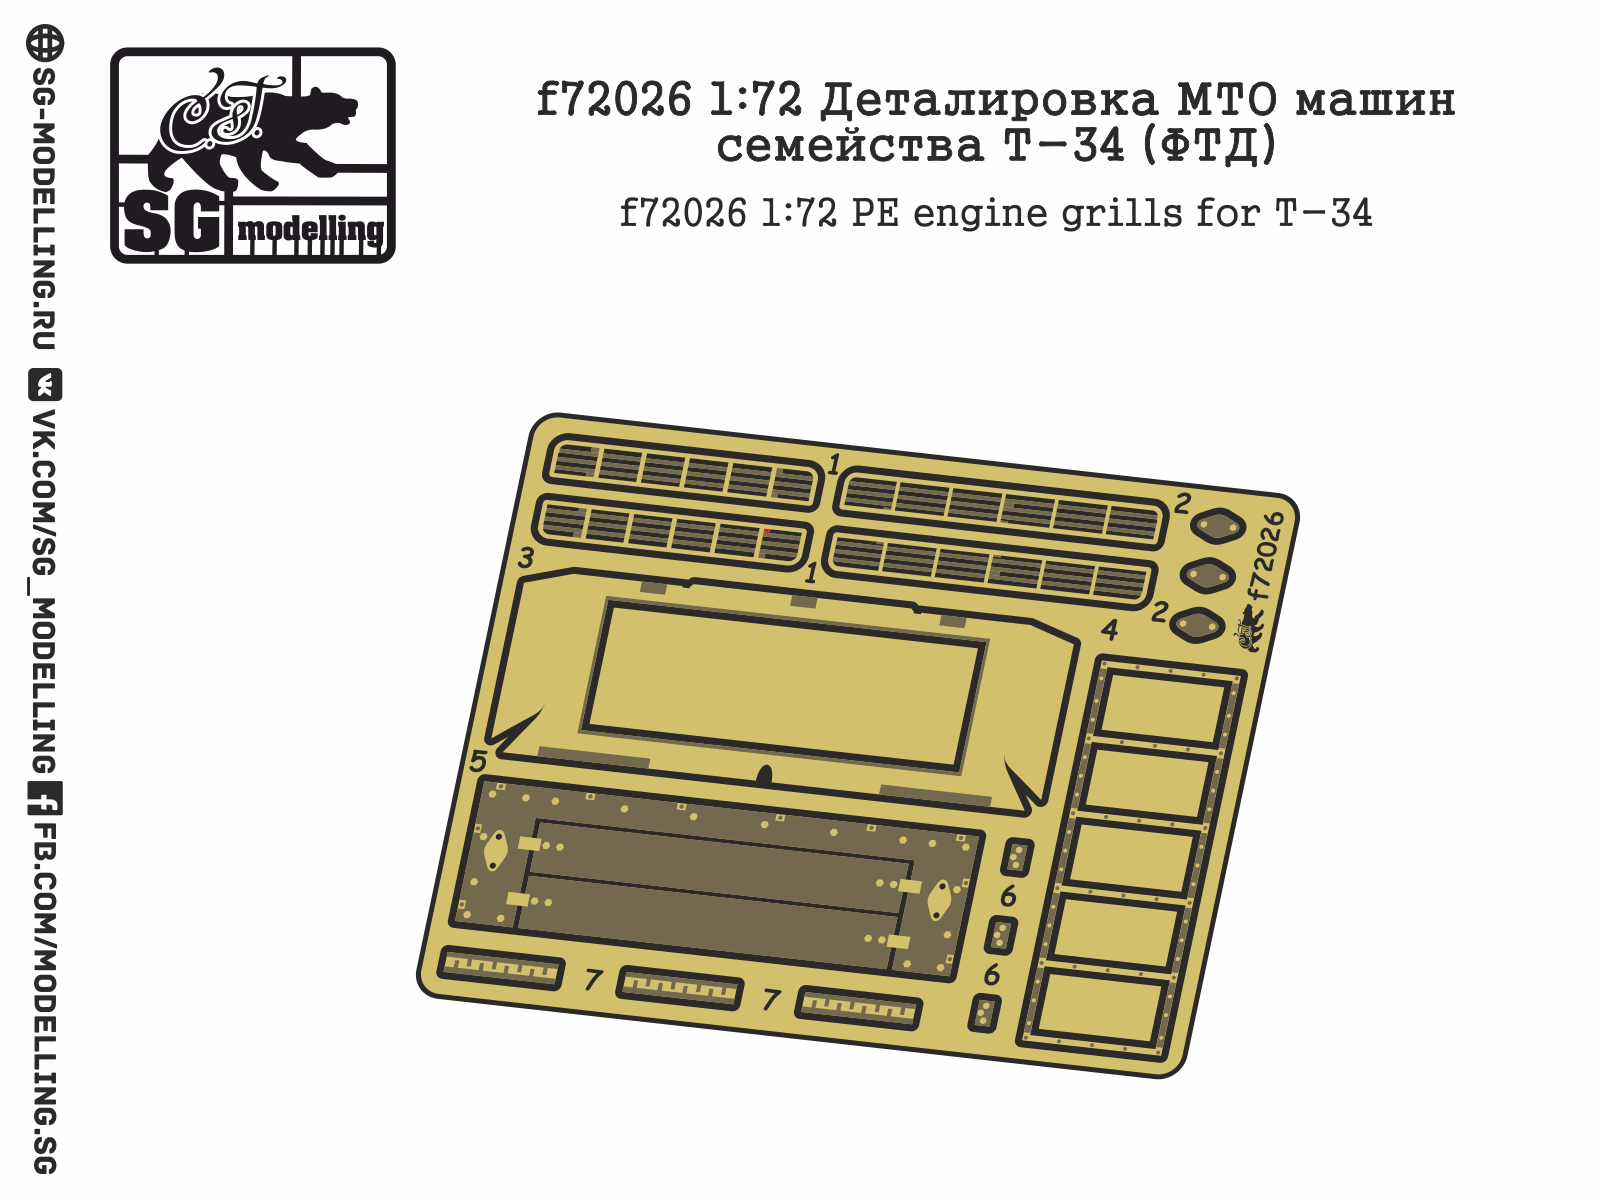 T-34 engine deck & grills (ZVE)